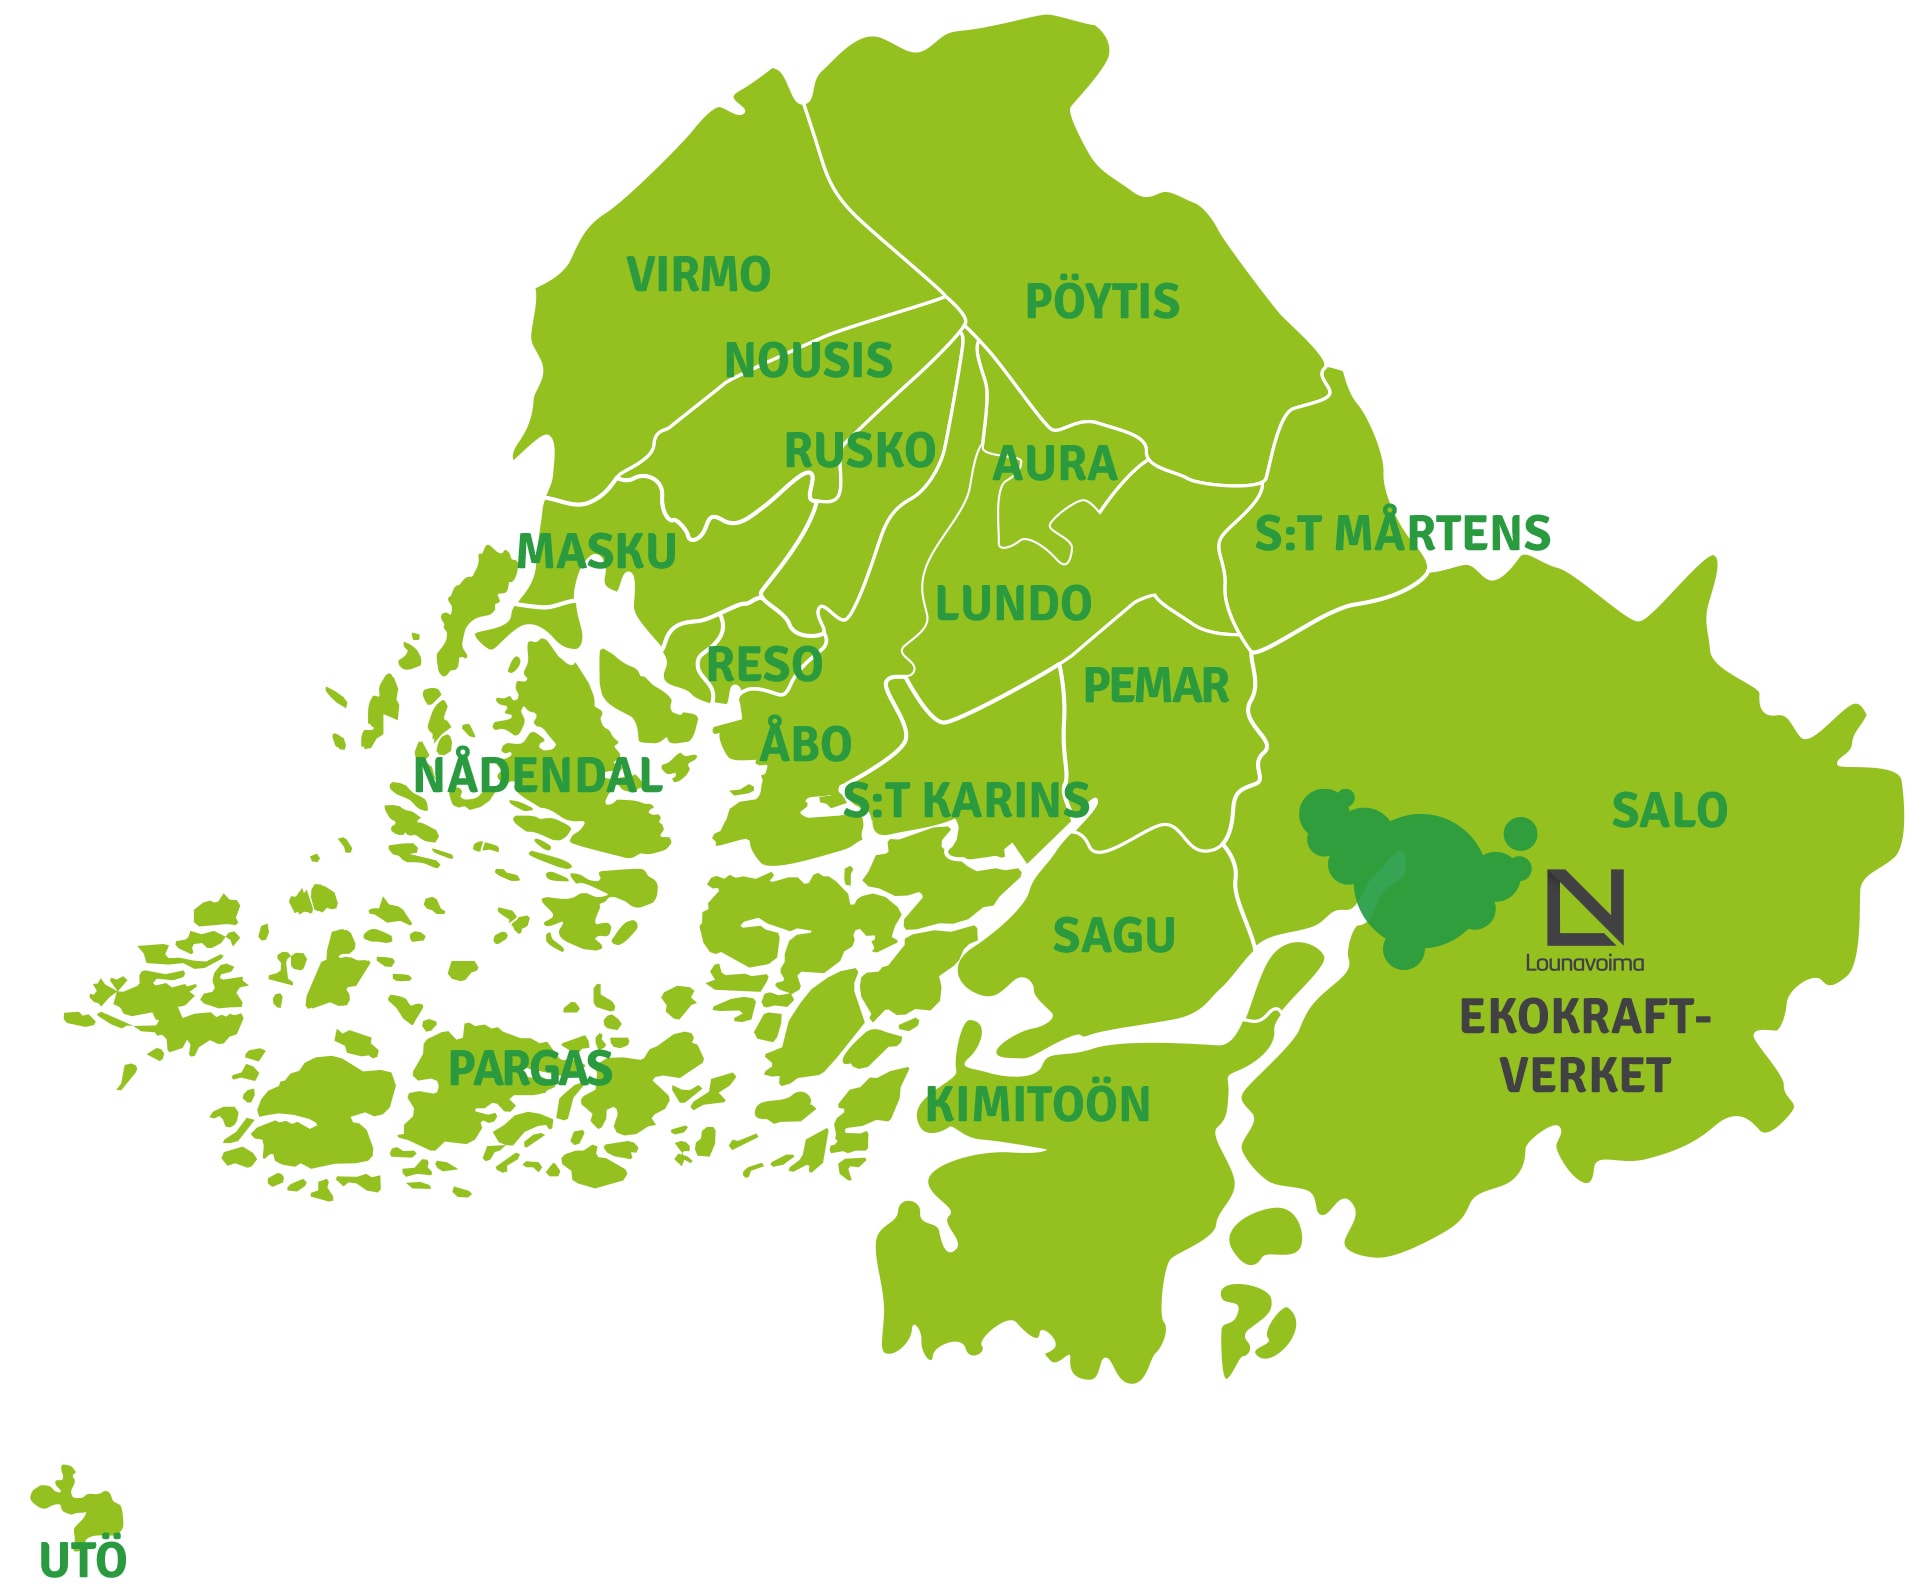 Lounavoima Oy: s uppgift är att utnyttja icke återvinningsbart samhällsavfall som samlas in av Sydvästra Finlands Avfallshantering Ab i 17 kommuner som energi.